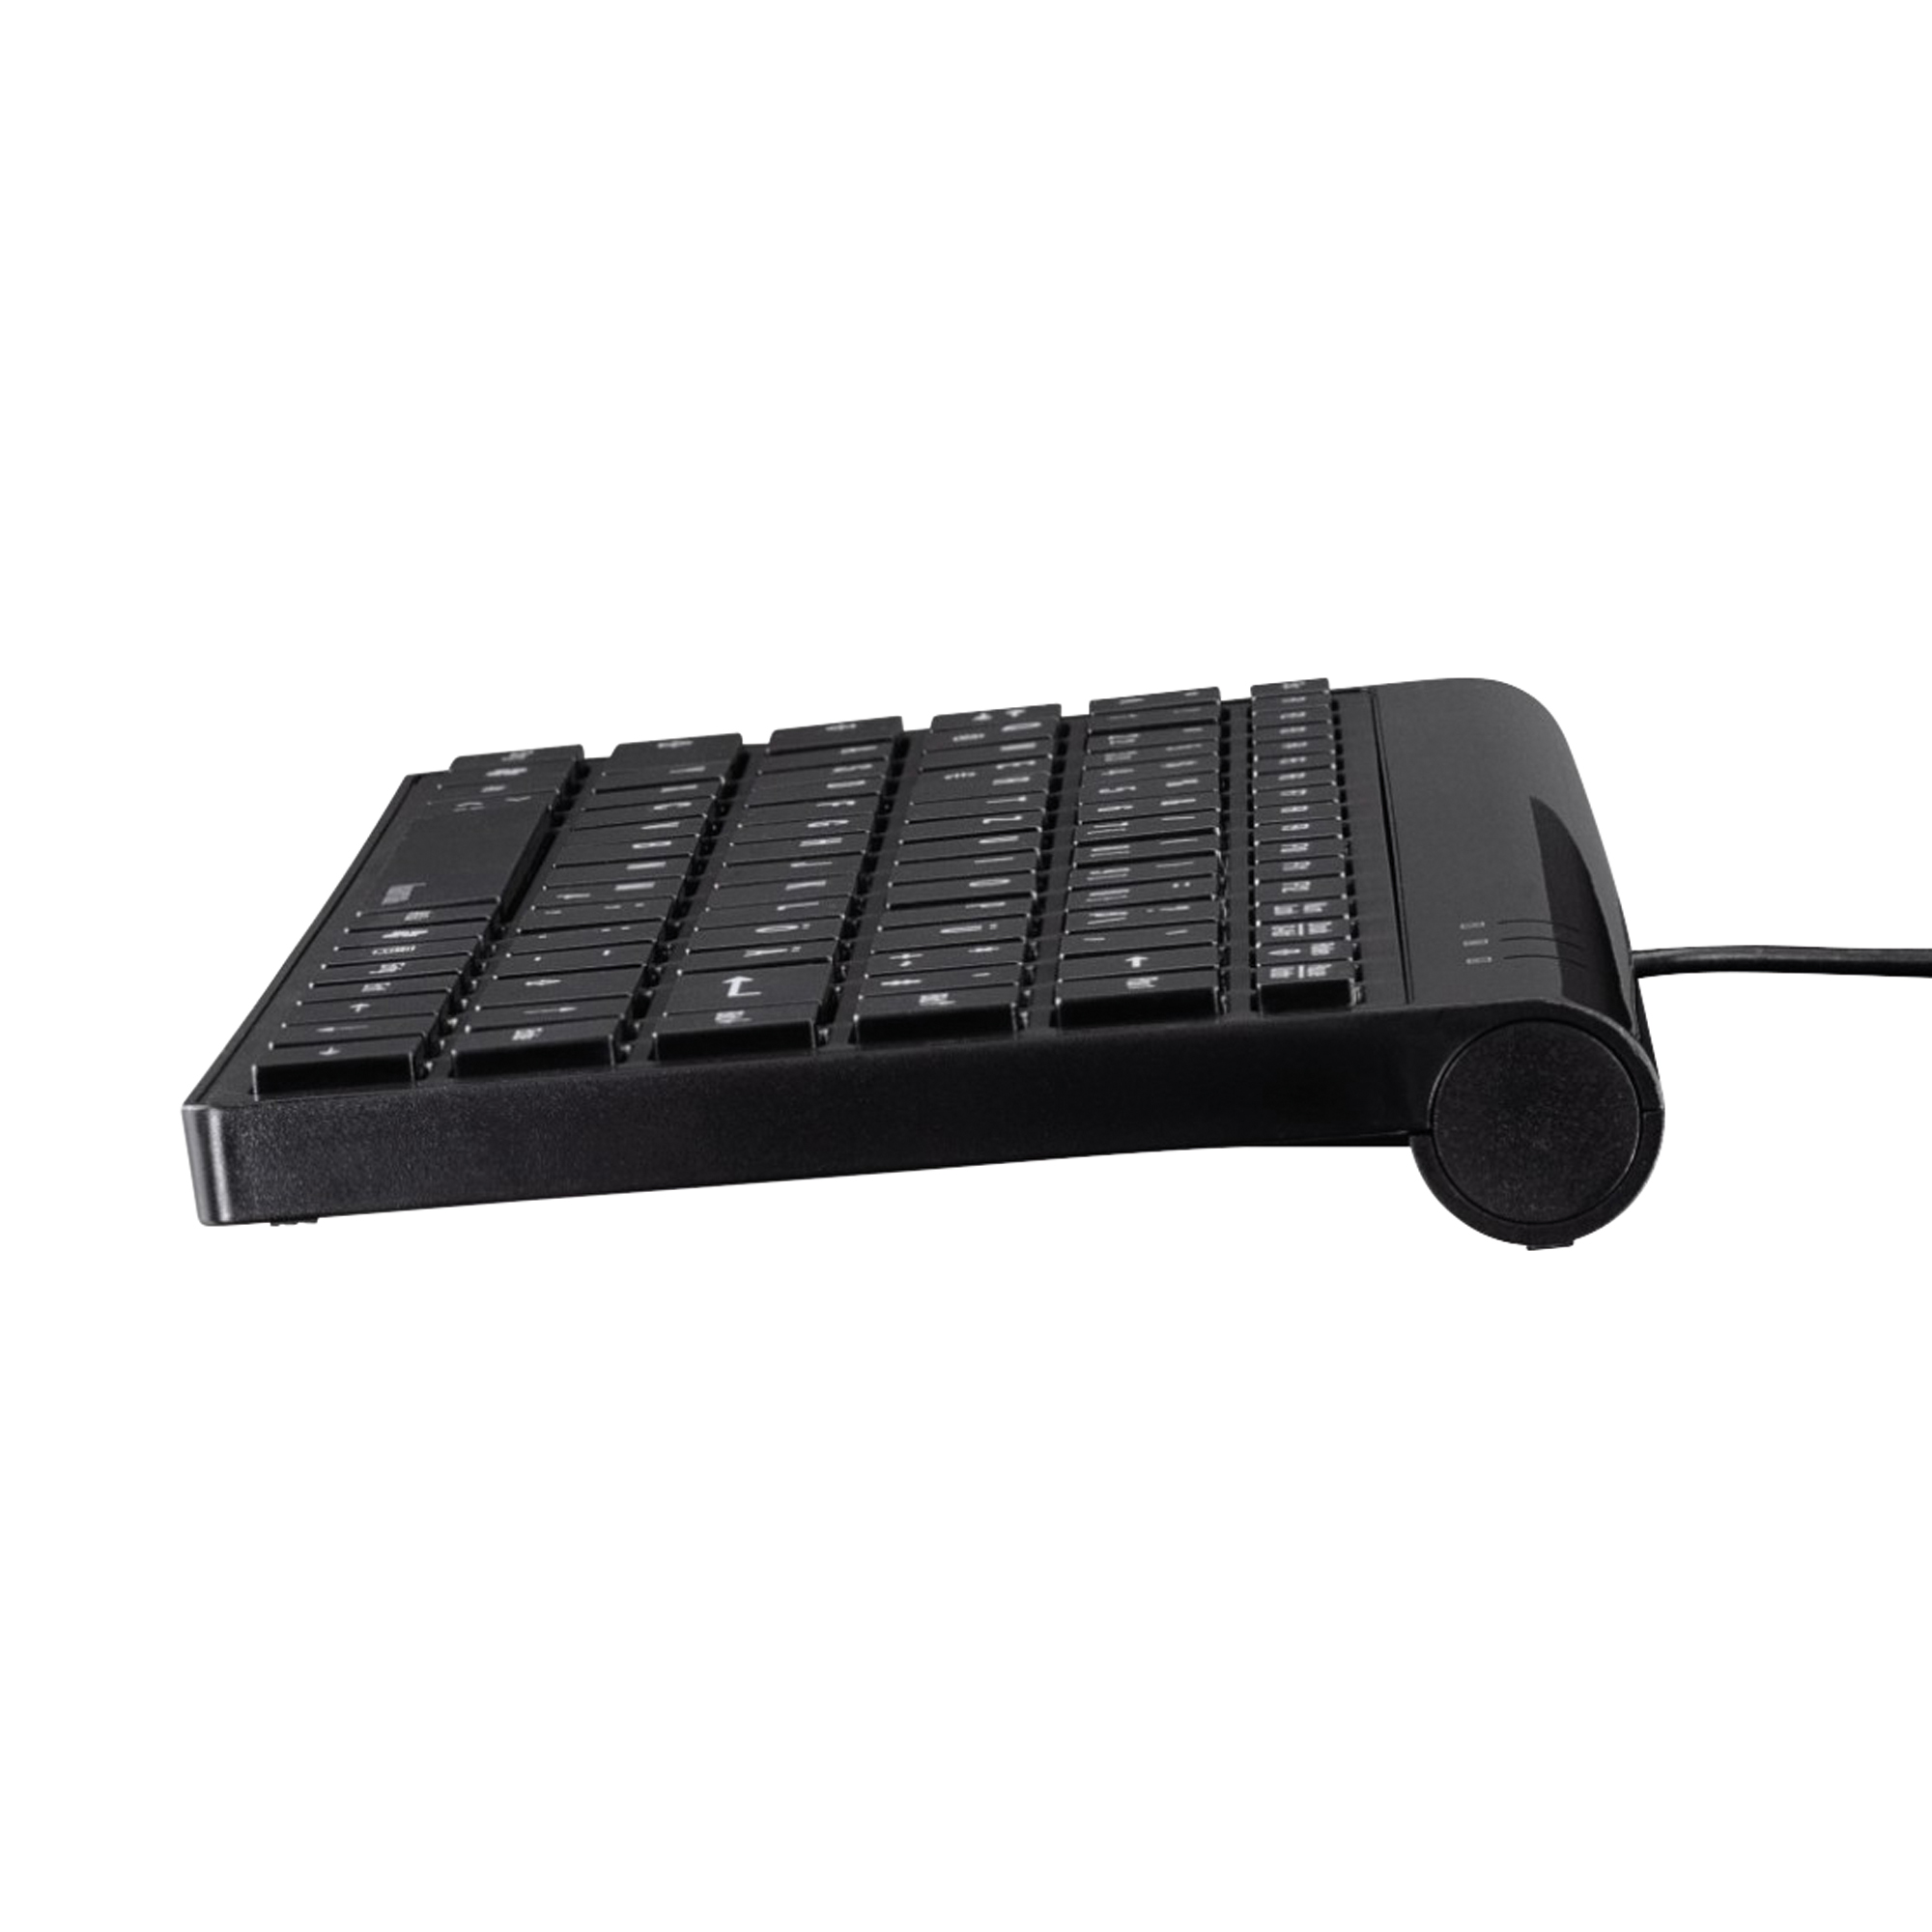 Hama Tastatur Slimline SL720 mit Soft-Touch-Oberfläche